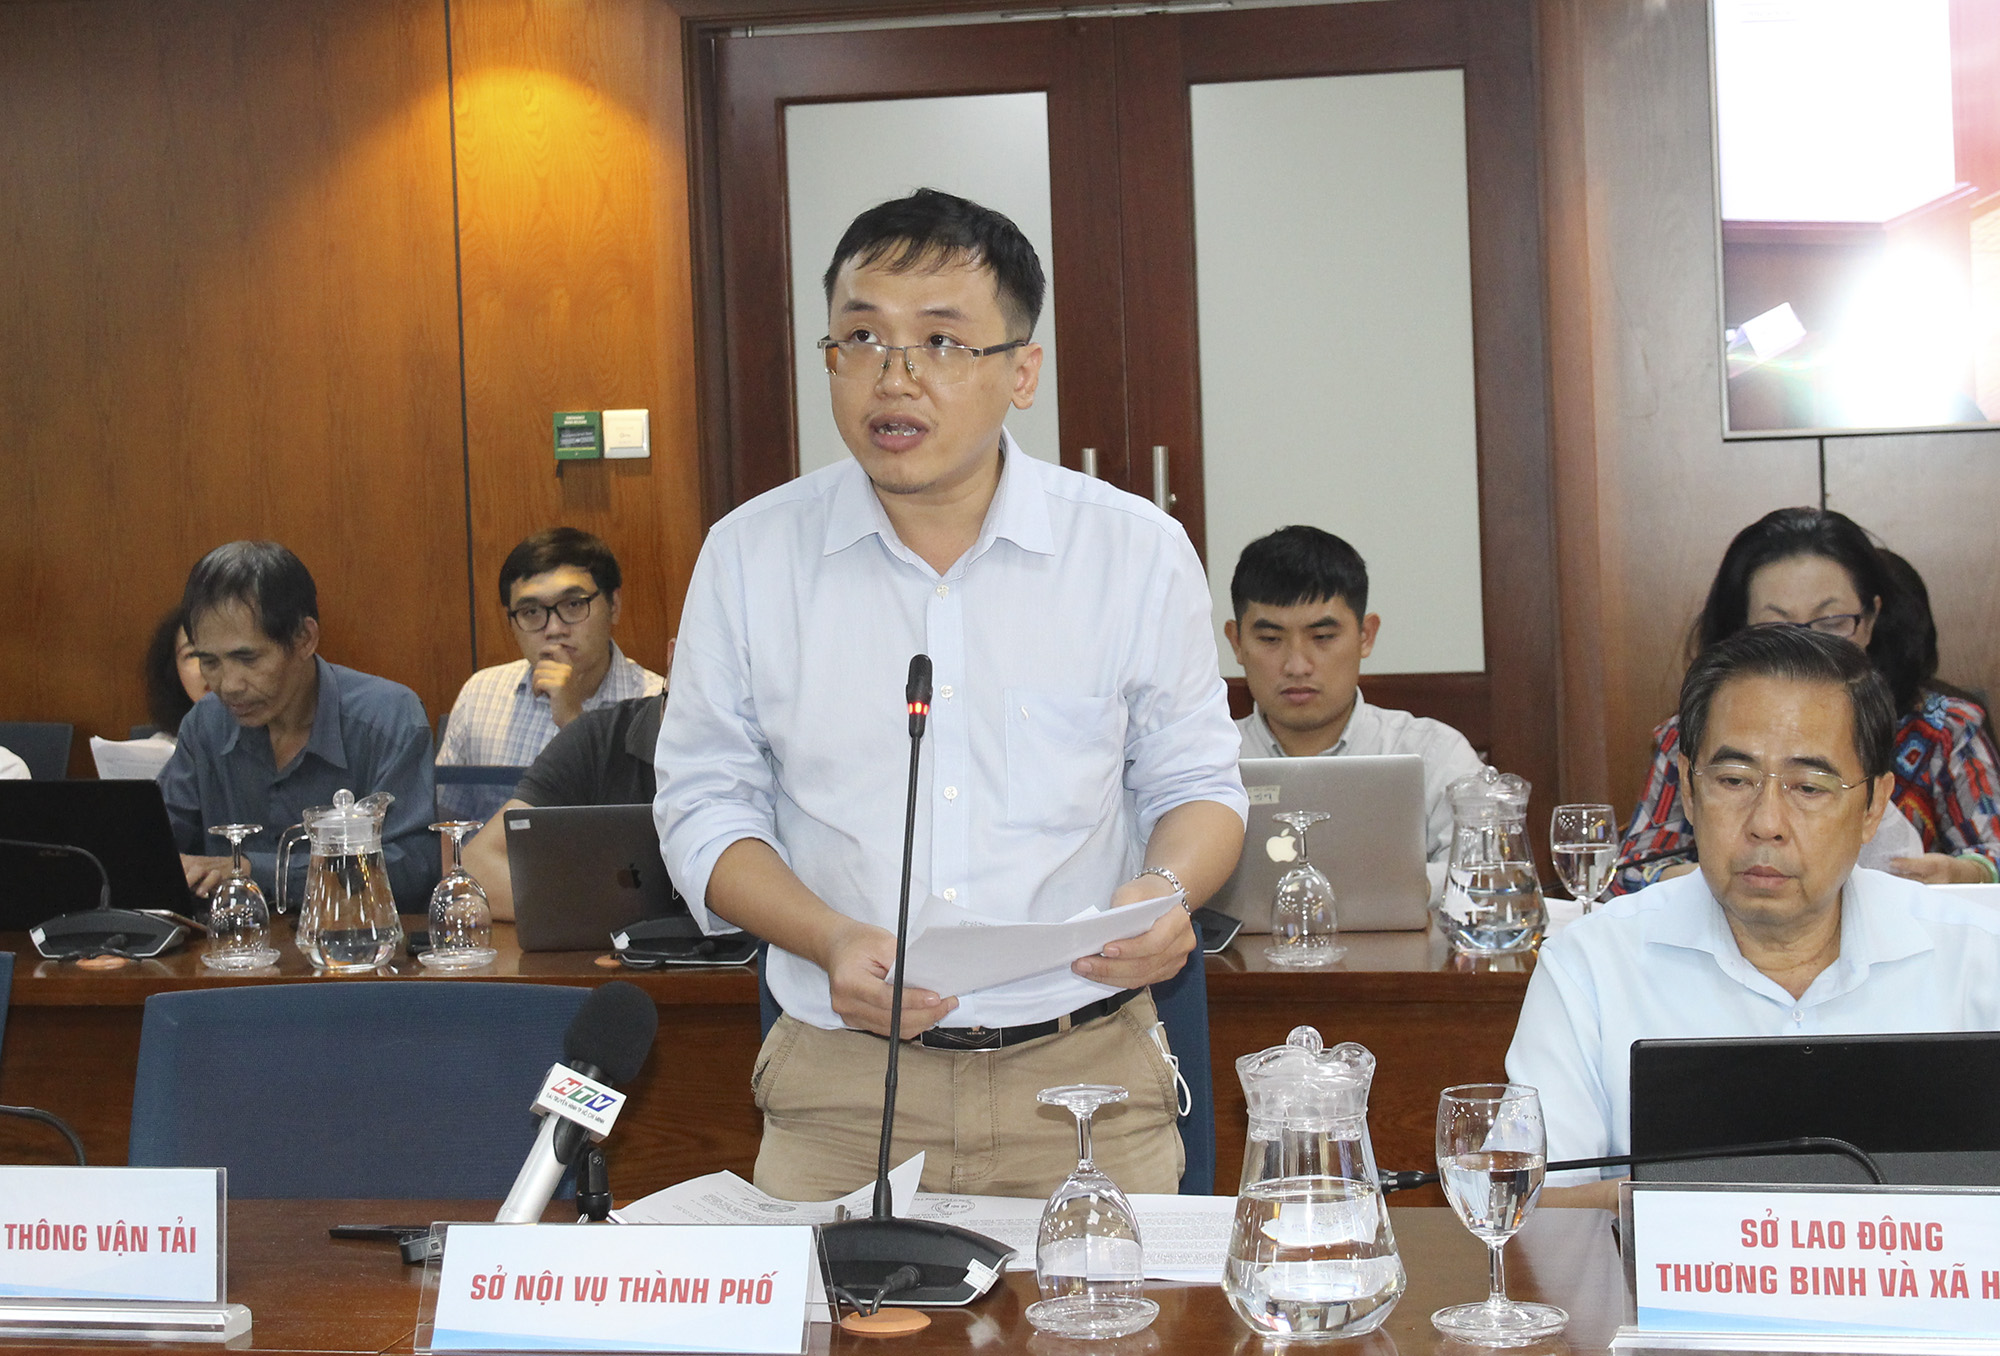 Đồng chí Nguyễn Sĩ Long – Phó Trưởng Phòng Viên chức Sở Nội vụ TP. Hồ Chí Minh phát biểu tại buổi họp báp (Ảnh: H.H).